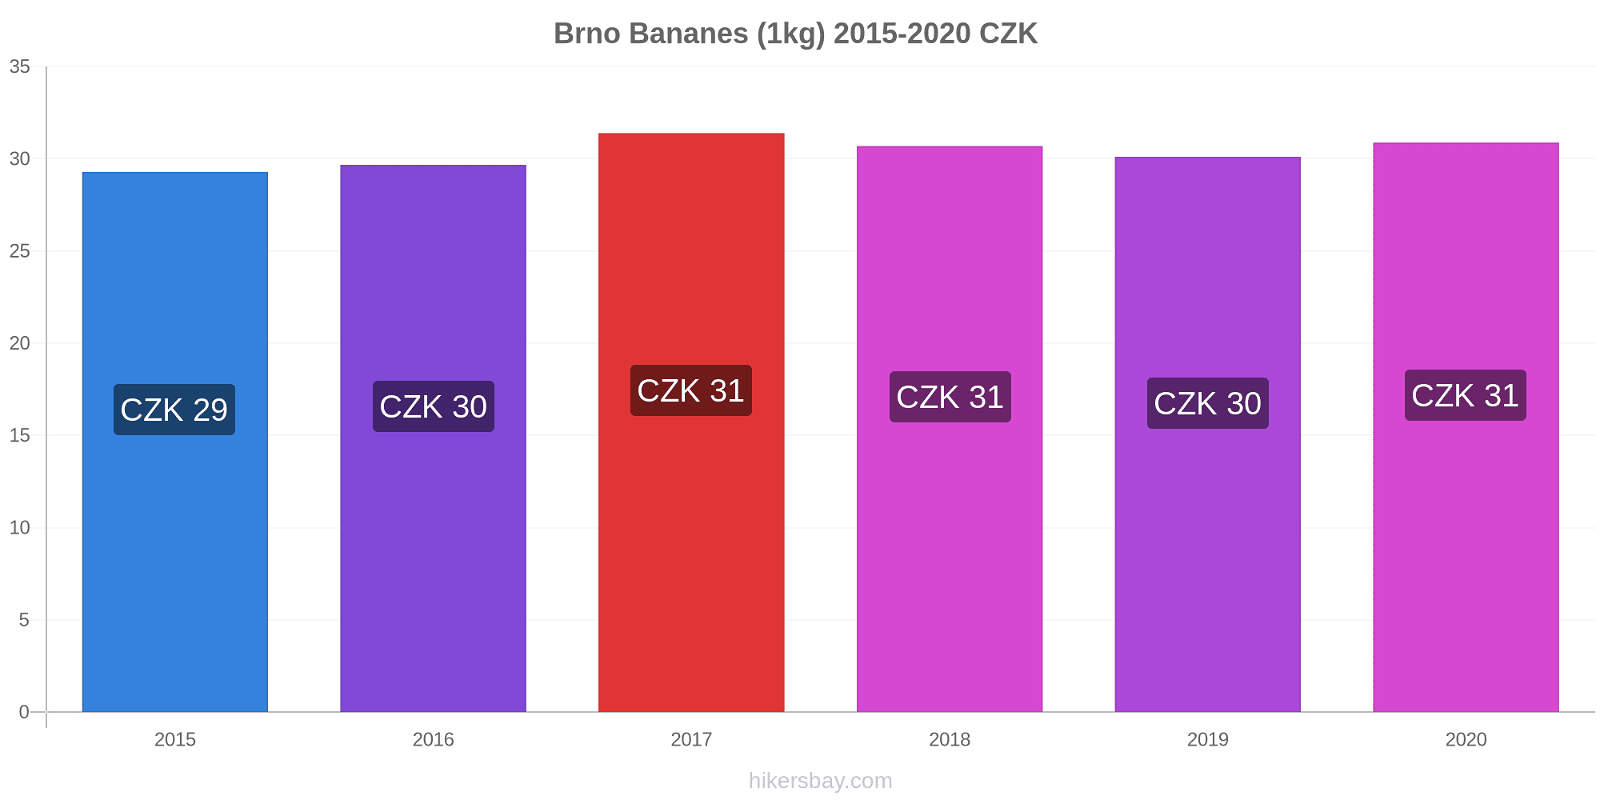 Brno changements de prix Bananes (1kg) hikersbay.com